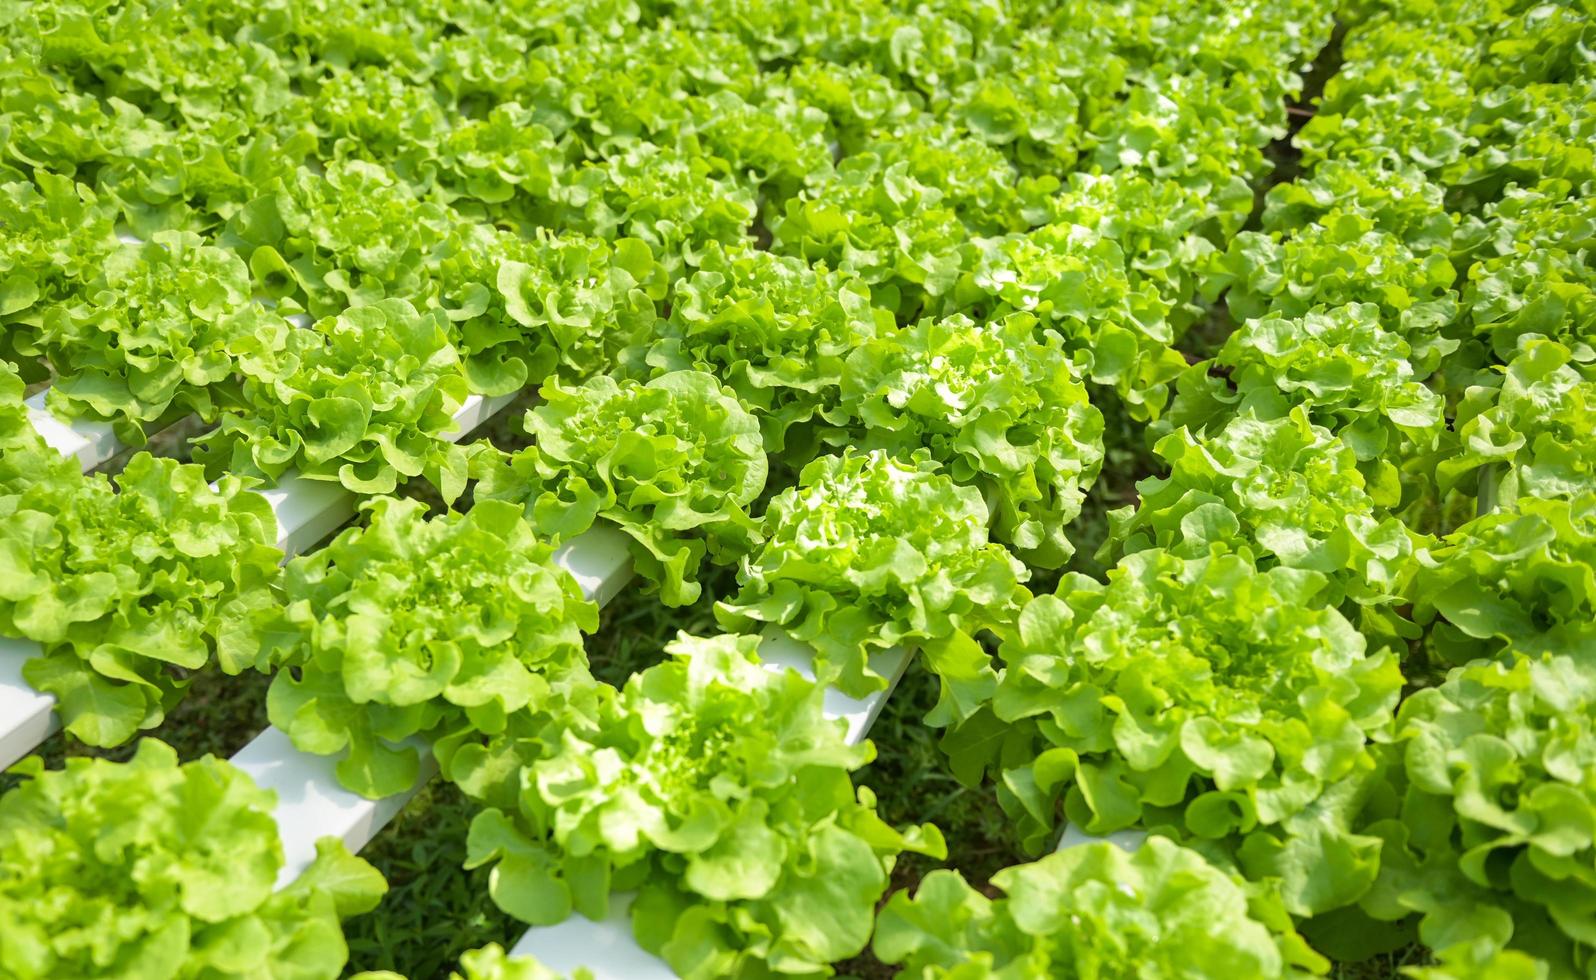 légumes hydroponiques provenant de fermes hydroponiques laitue de chêne verte fraîche poussant dans le jardin, plantes hydroponiques sur l'eau sans sol agriculture biologique aliments de santé nature récolte de feuilles bio photo